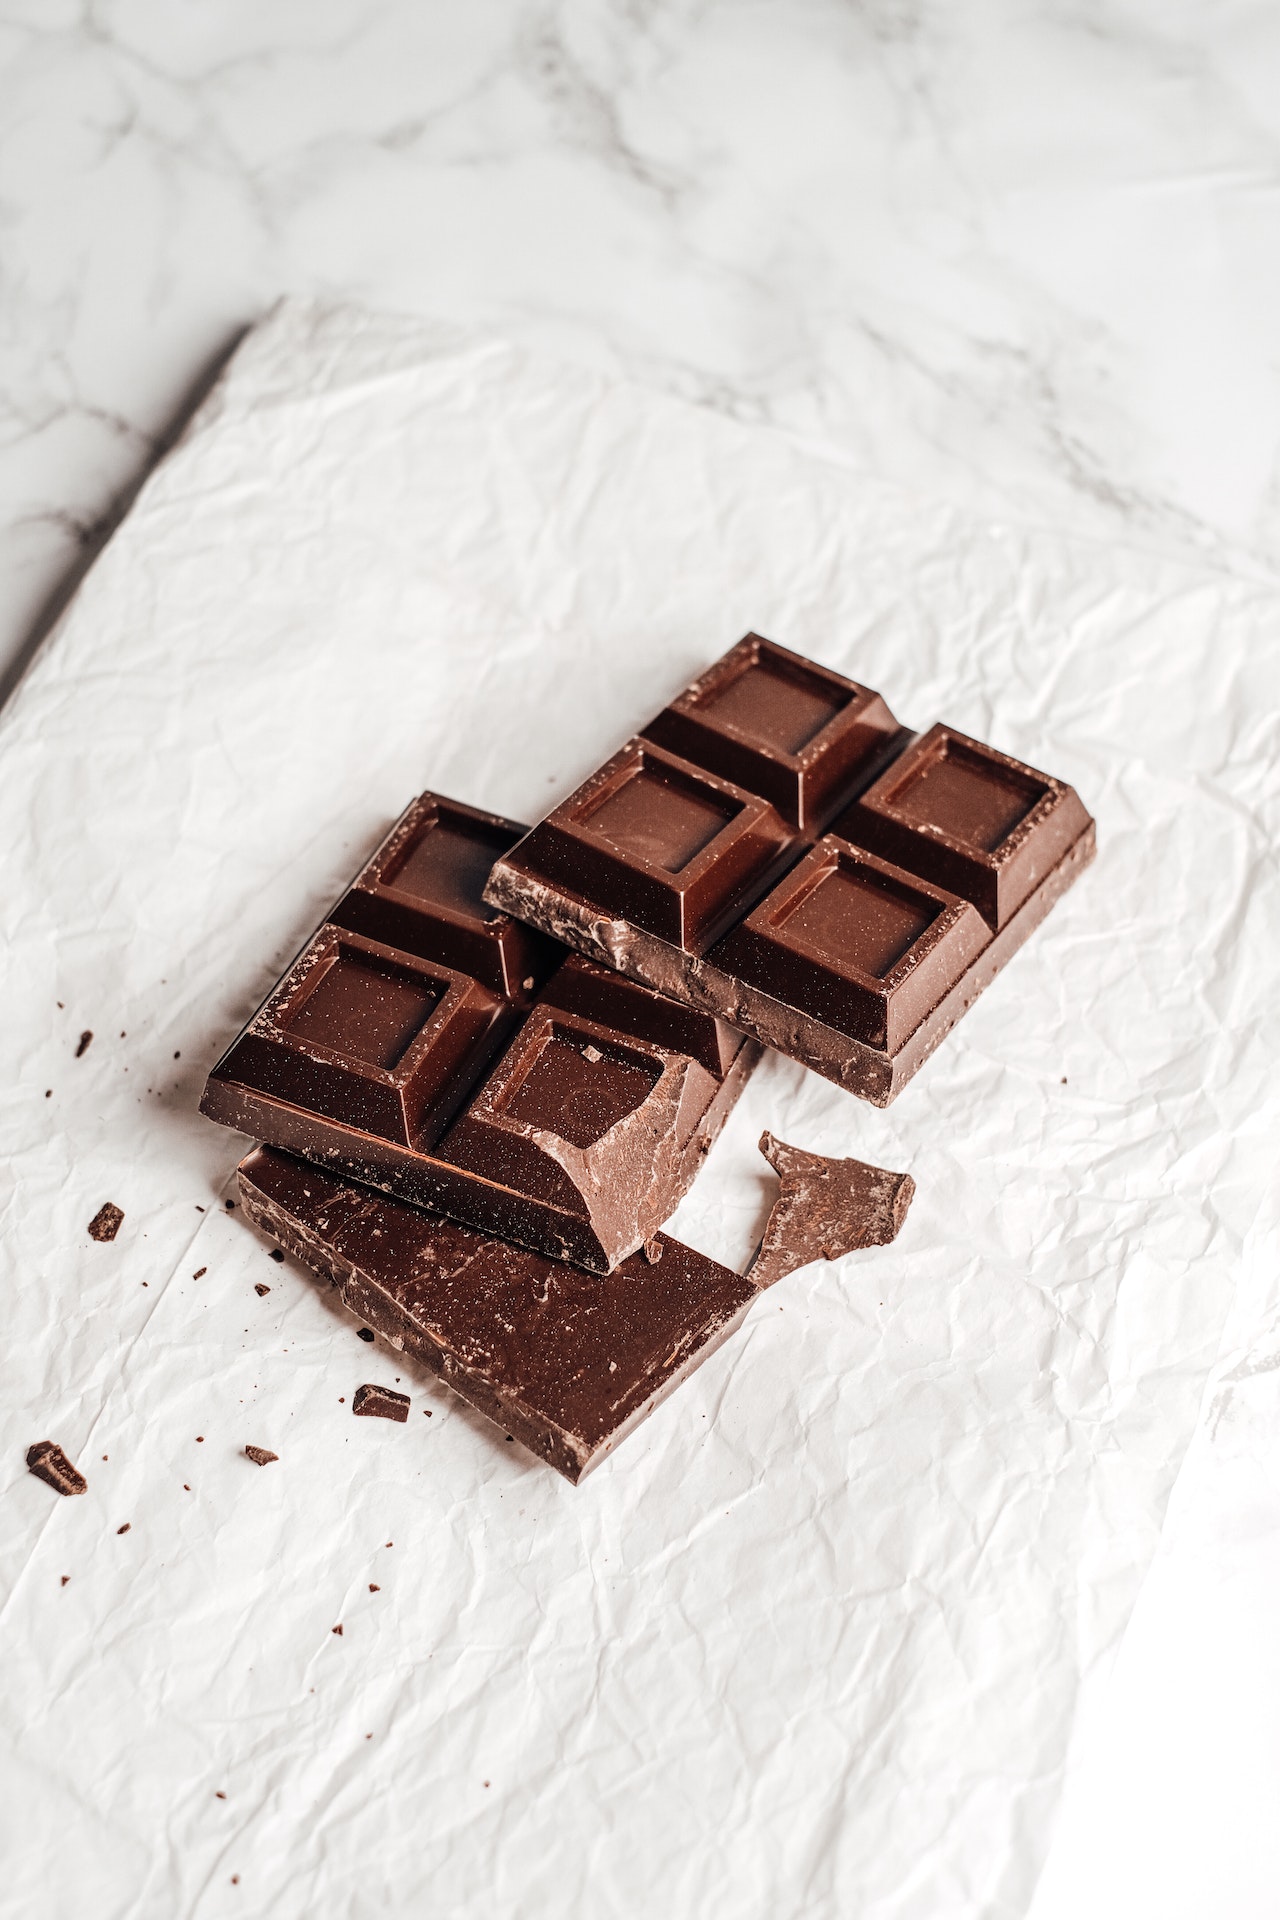 mitos y verdades sobre el chocolate